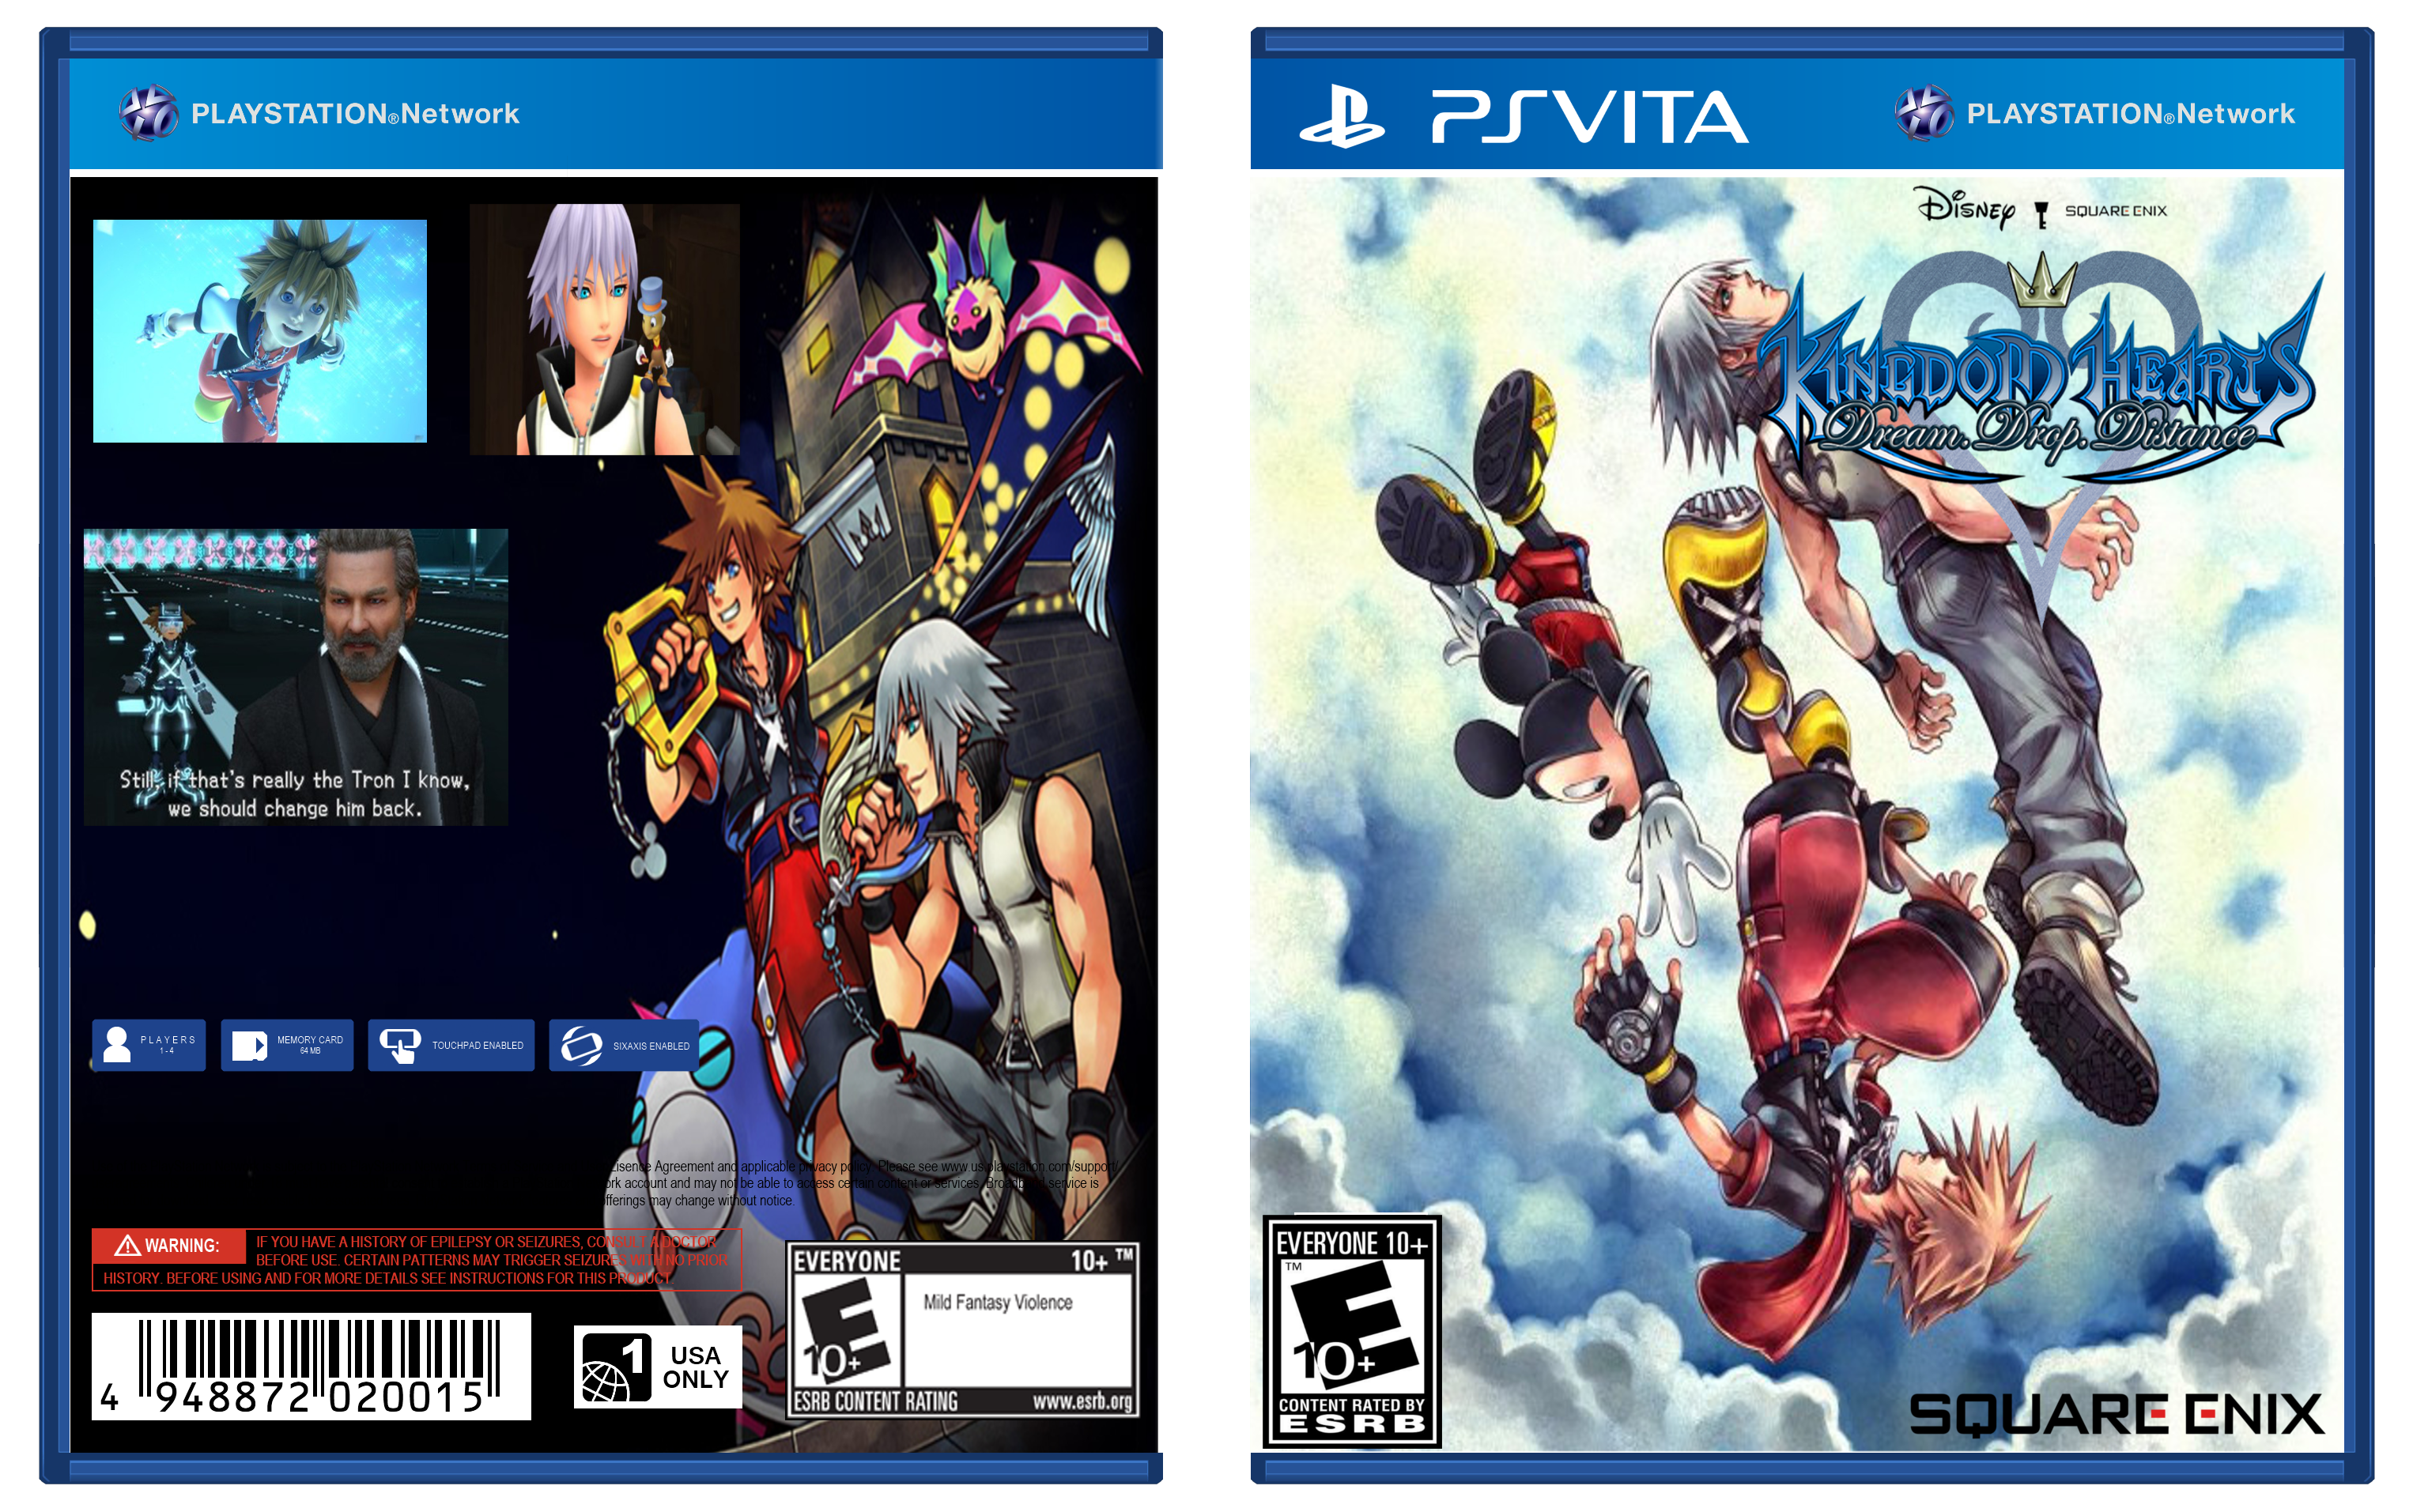 Kingdom Hearts: Dream Drop Distance box cover